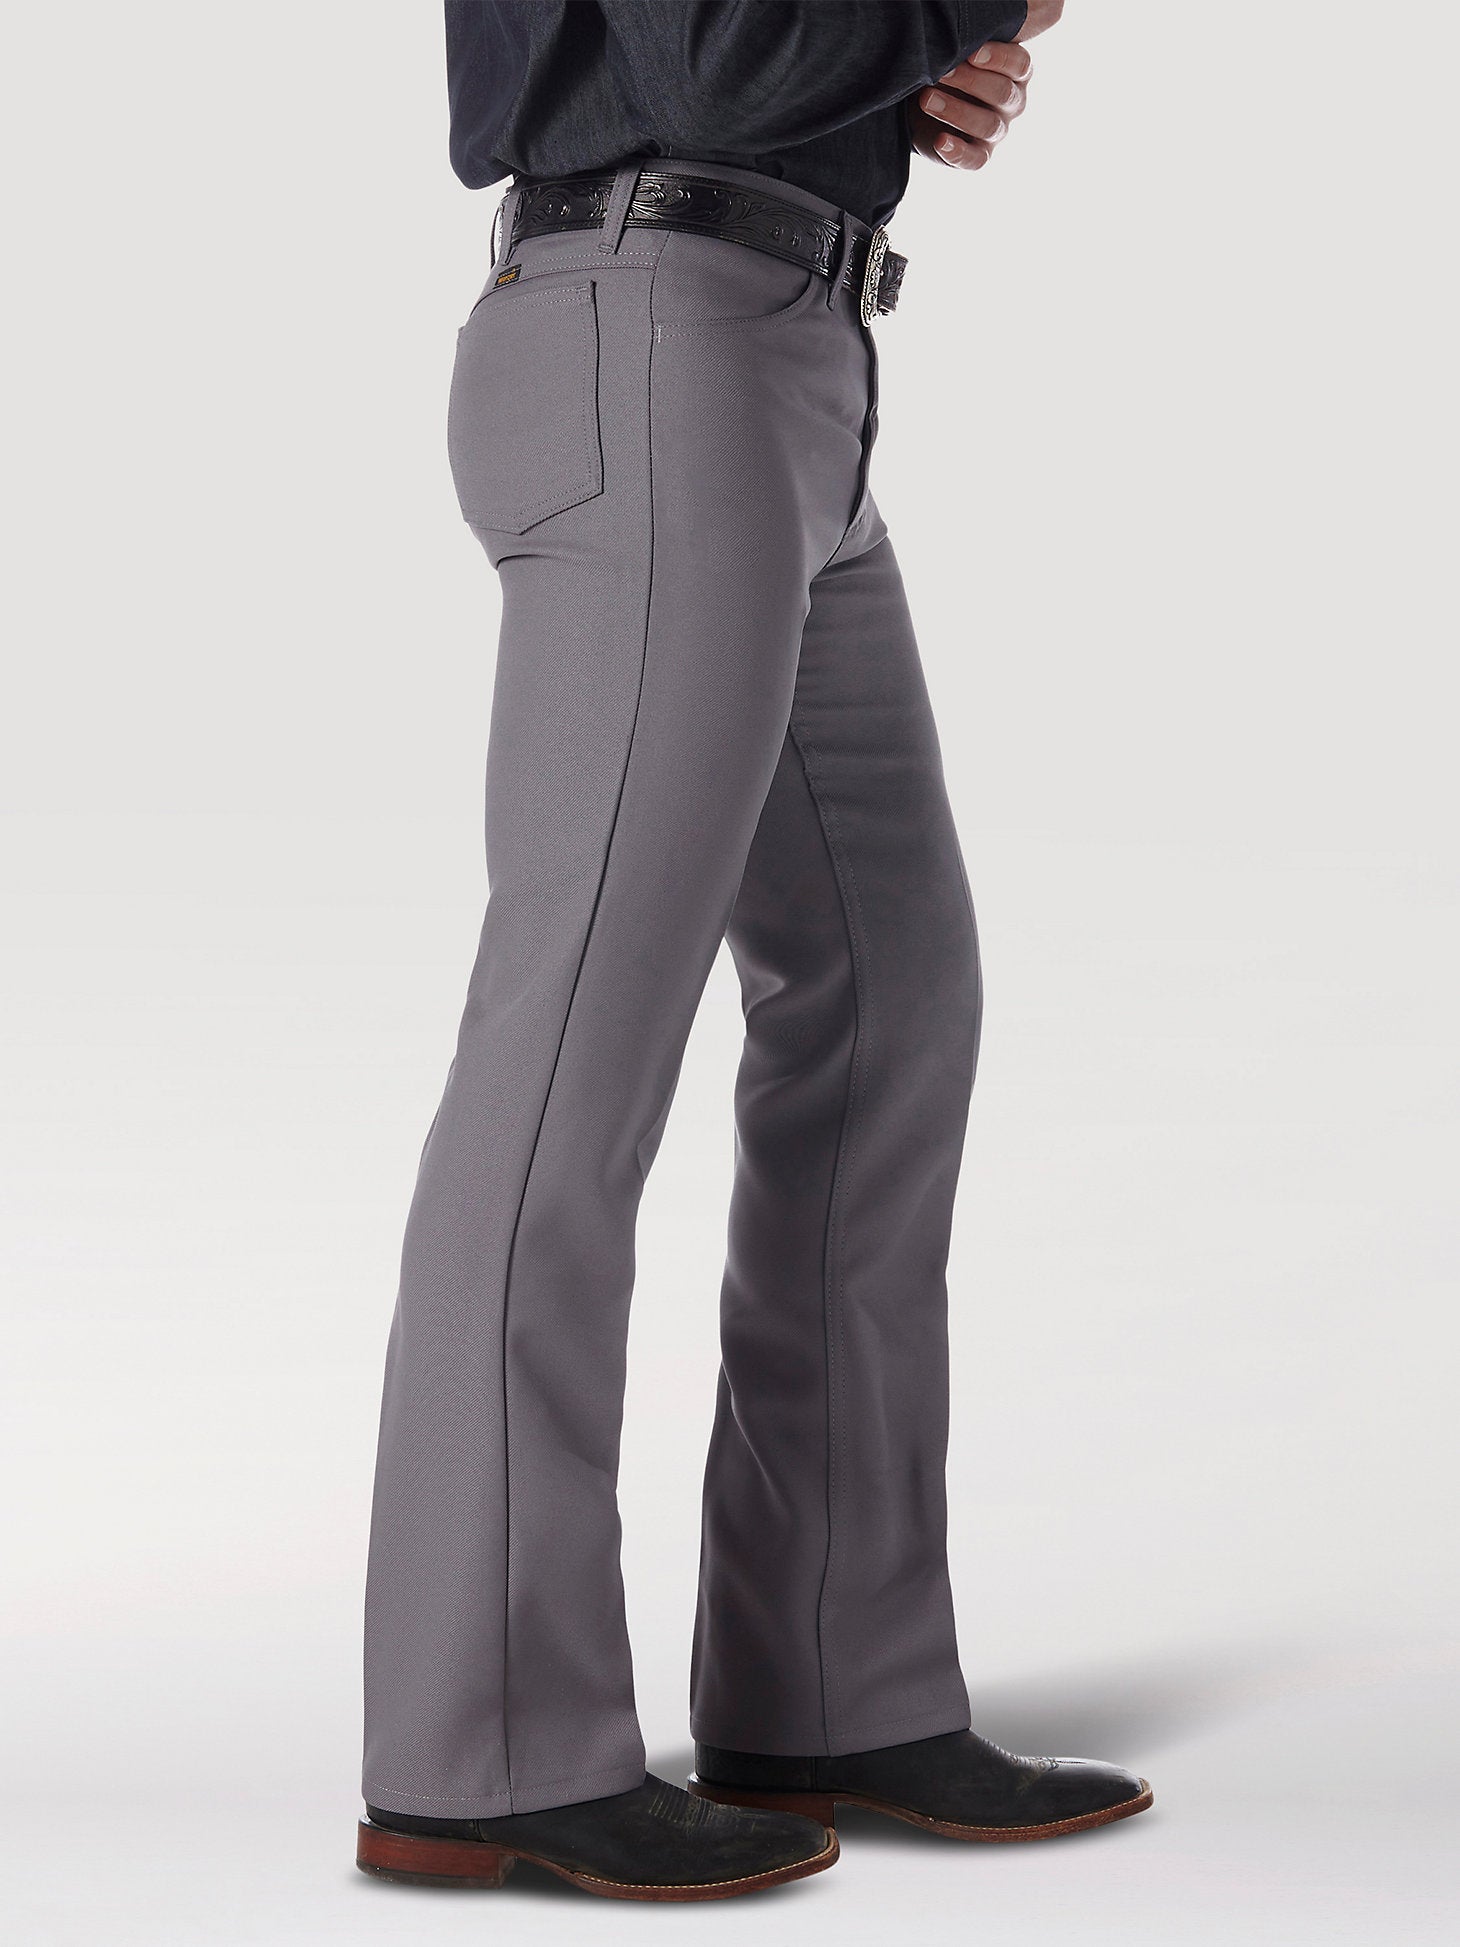 Wrangler Men's Wrancher Gray Dress Pants